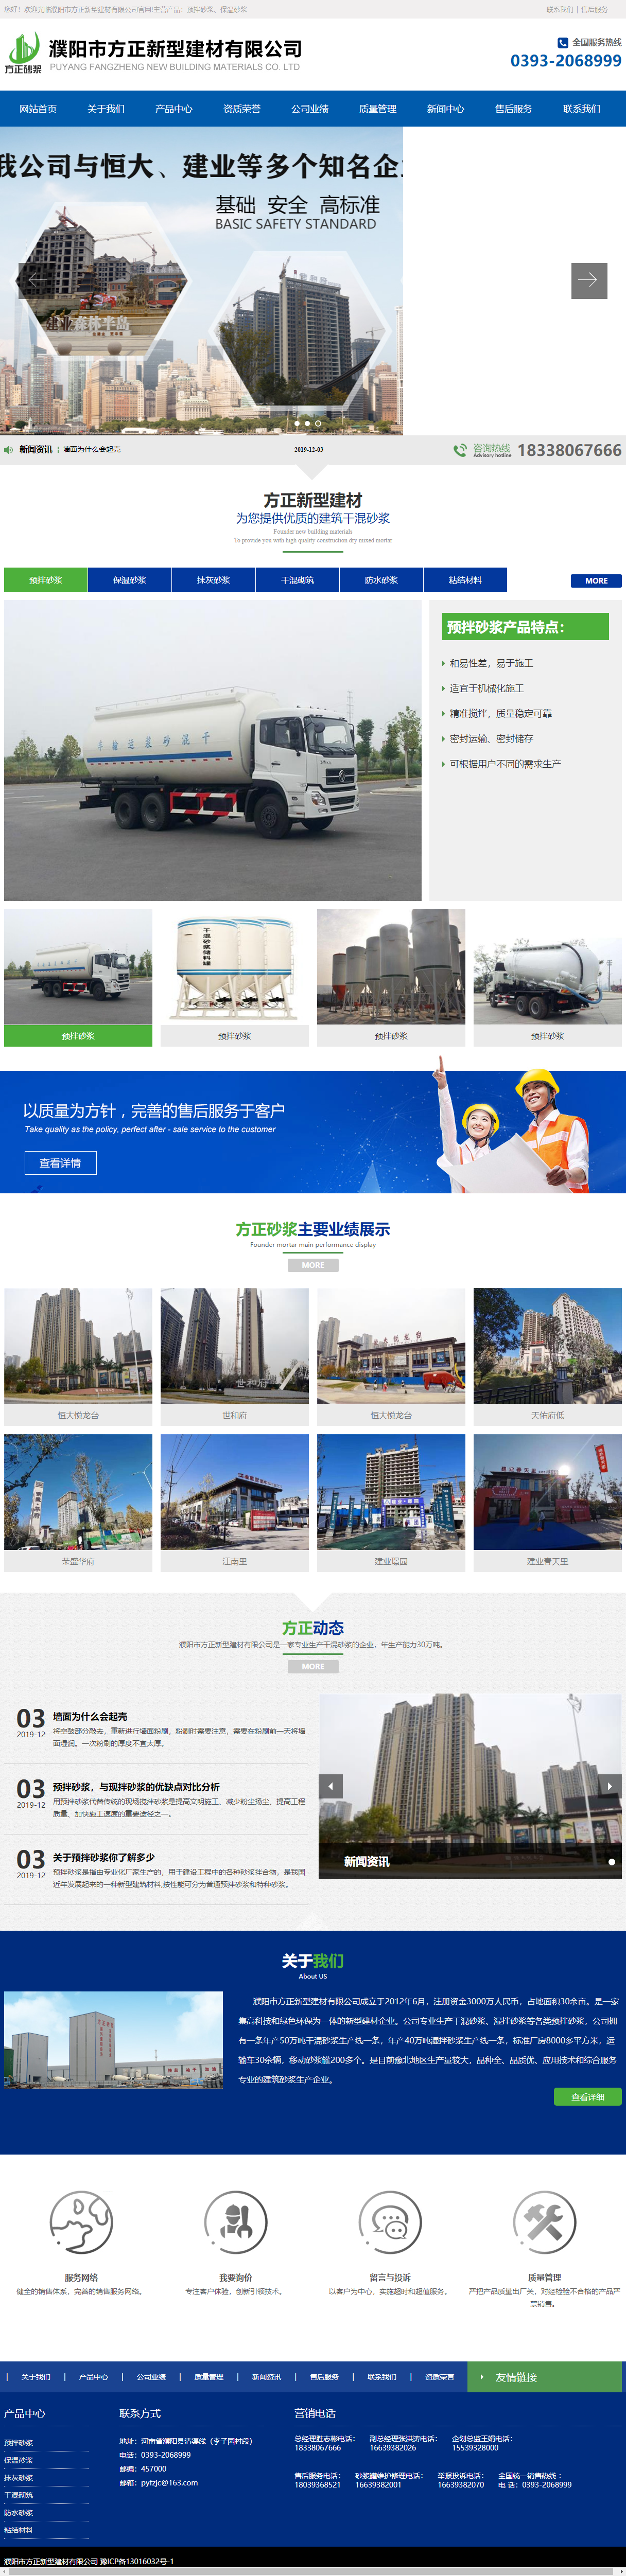 濮阳市方正新型建材有限公司网站案例